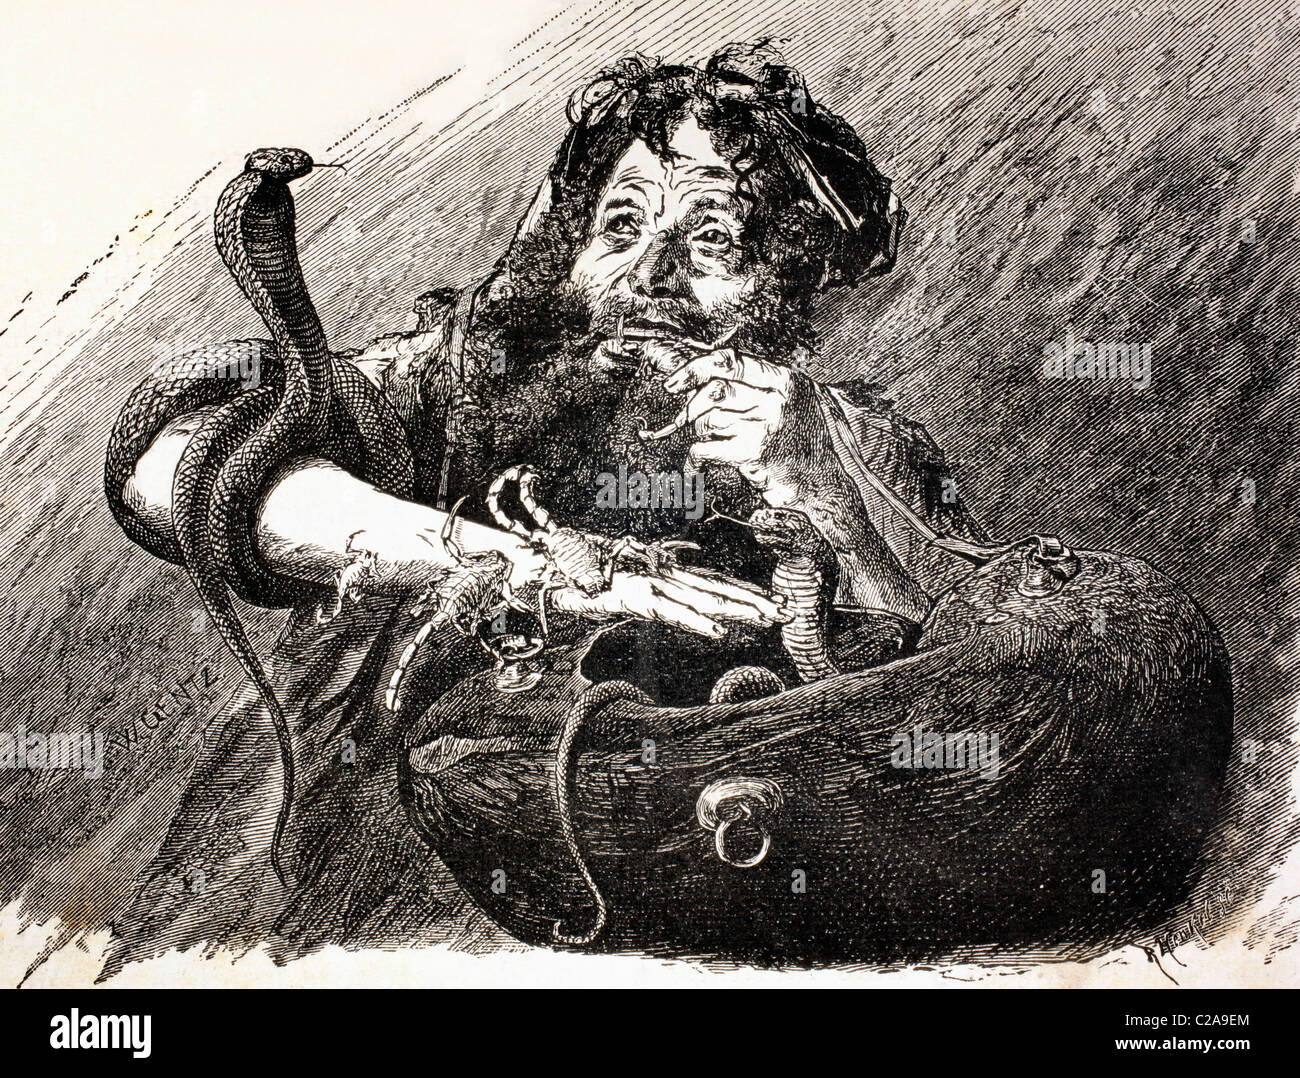 Un derviche égyptien au 19ème siècle, manger des scorpions. Banque D'Images